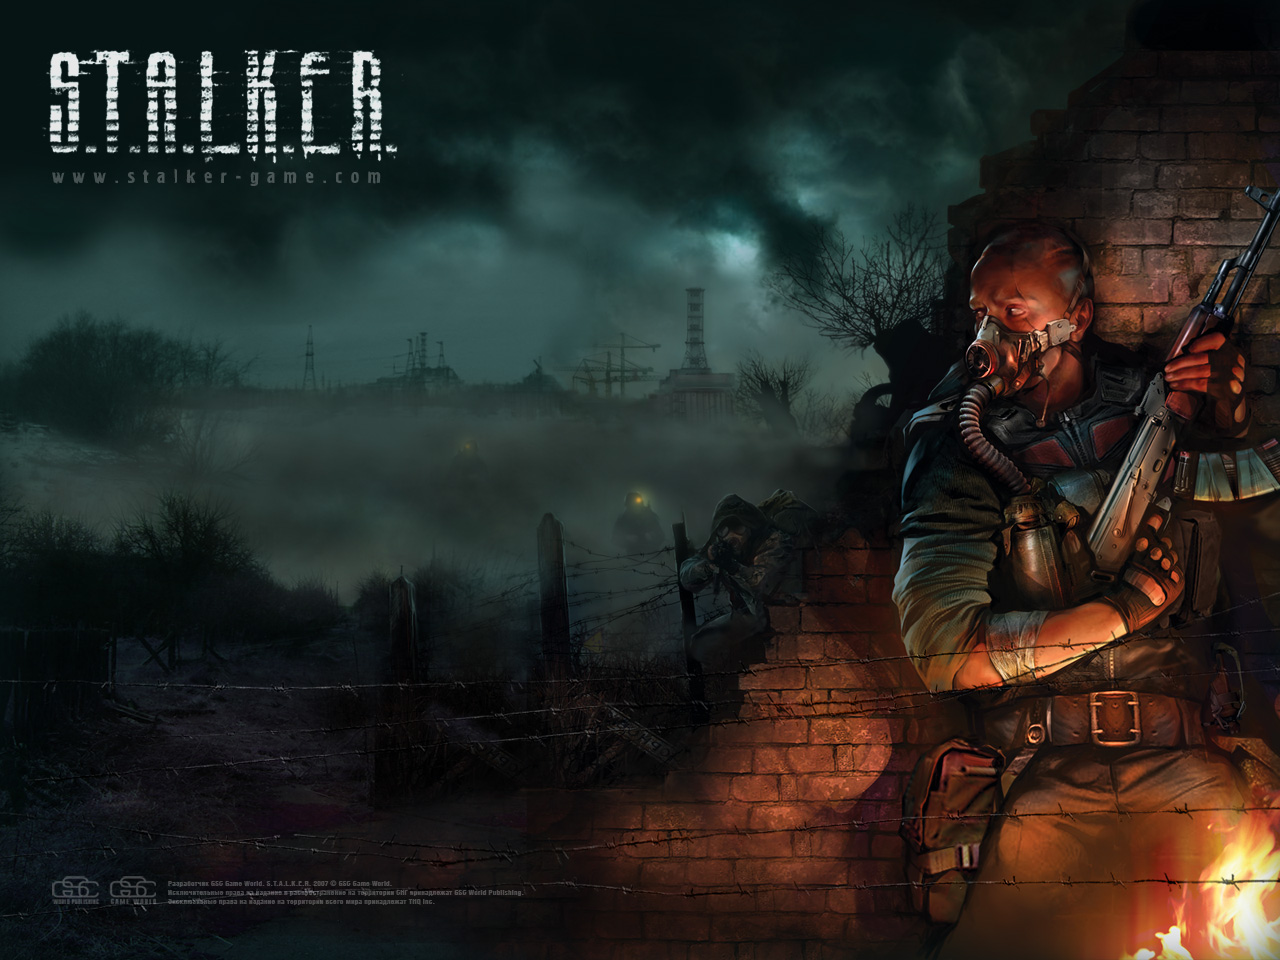 stalker wallpaper,action adventure game,pc game,cg artwork,movie,darkness